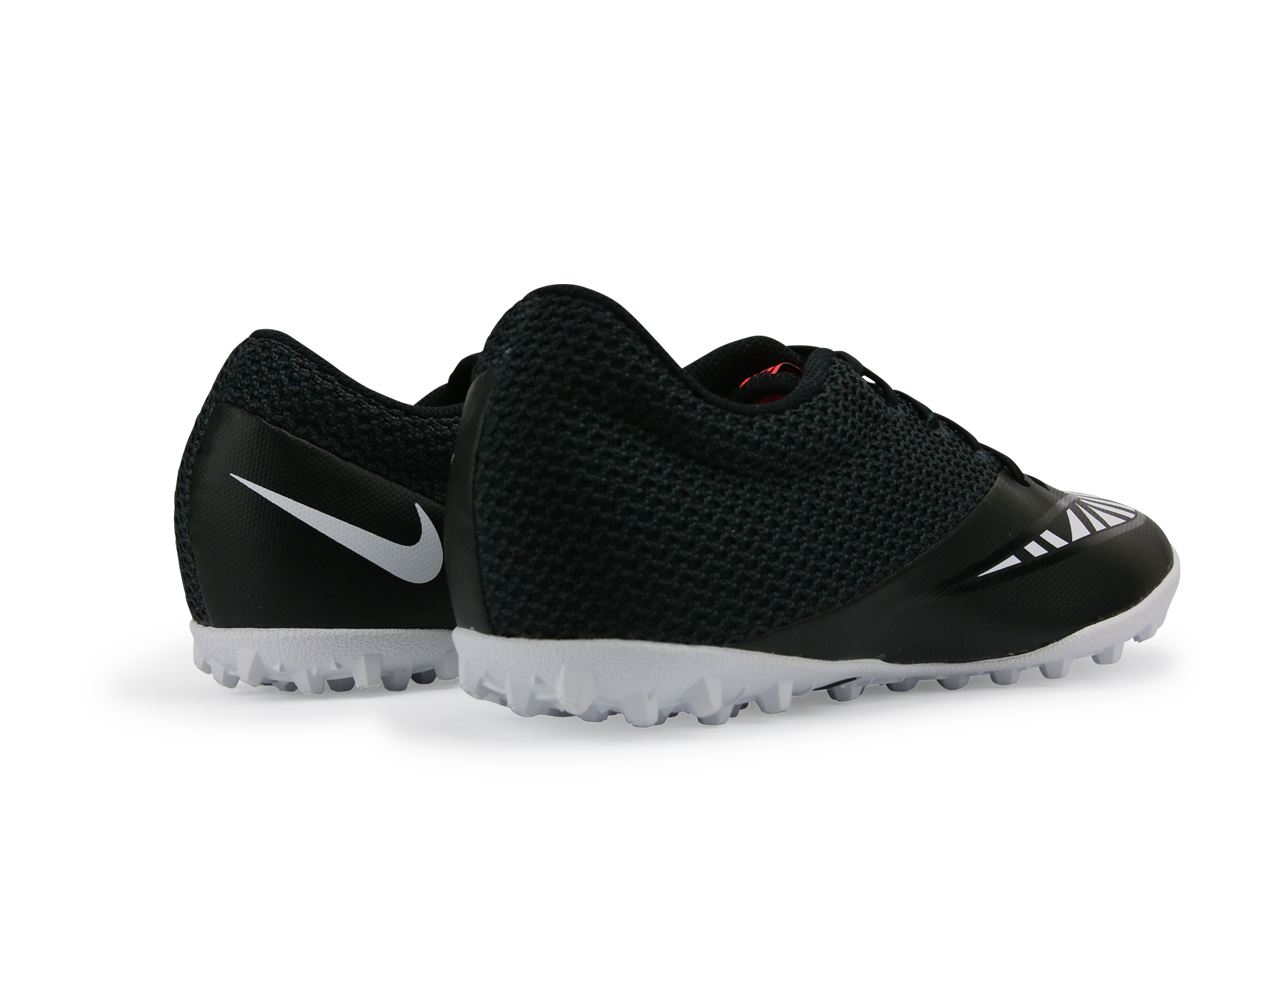 Nike Men's MercurialX Pro Street Turf Soccer Shoes Black/White/Hot Lava